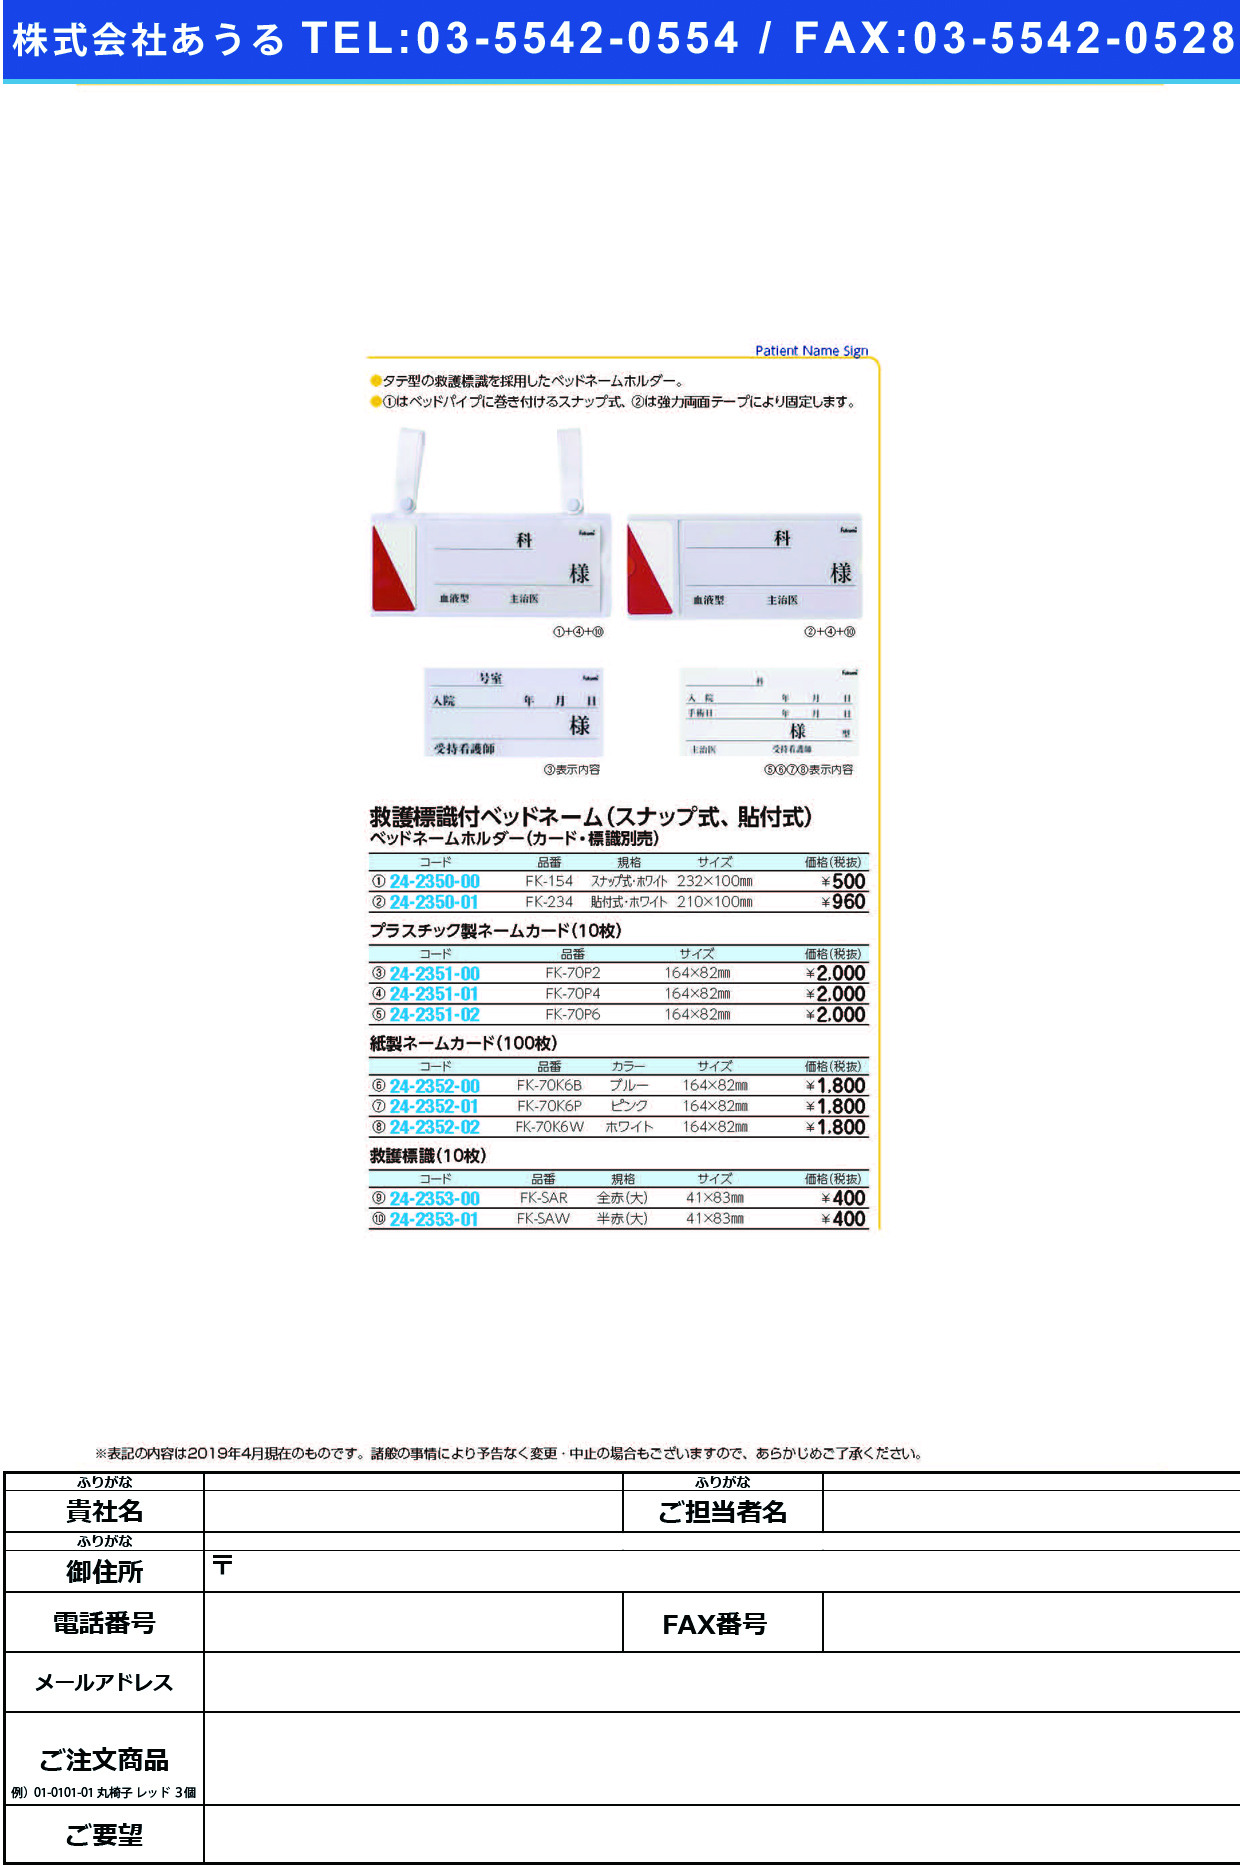 (24-2351-02)ネームカード（プラ） FK-70P6(10ﾏｲｲﾘ) ﾈｰﾑｶｰﾄﾞ【1束単位】【2019年カタログ商品】